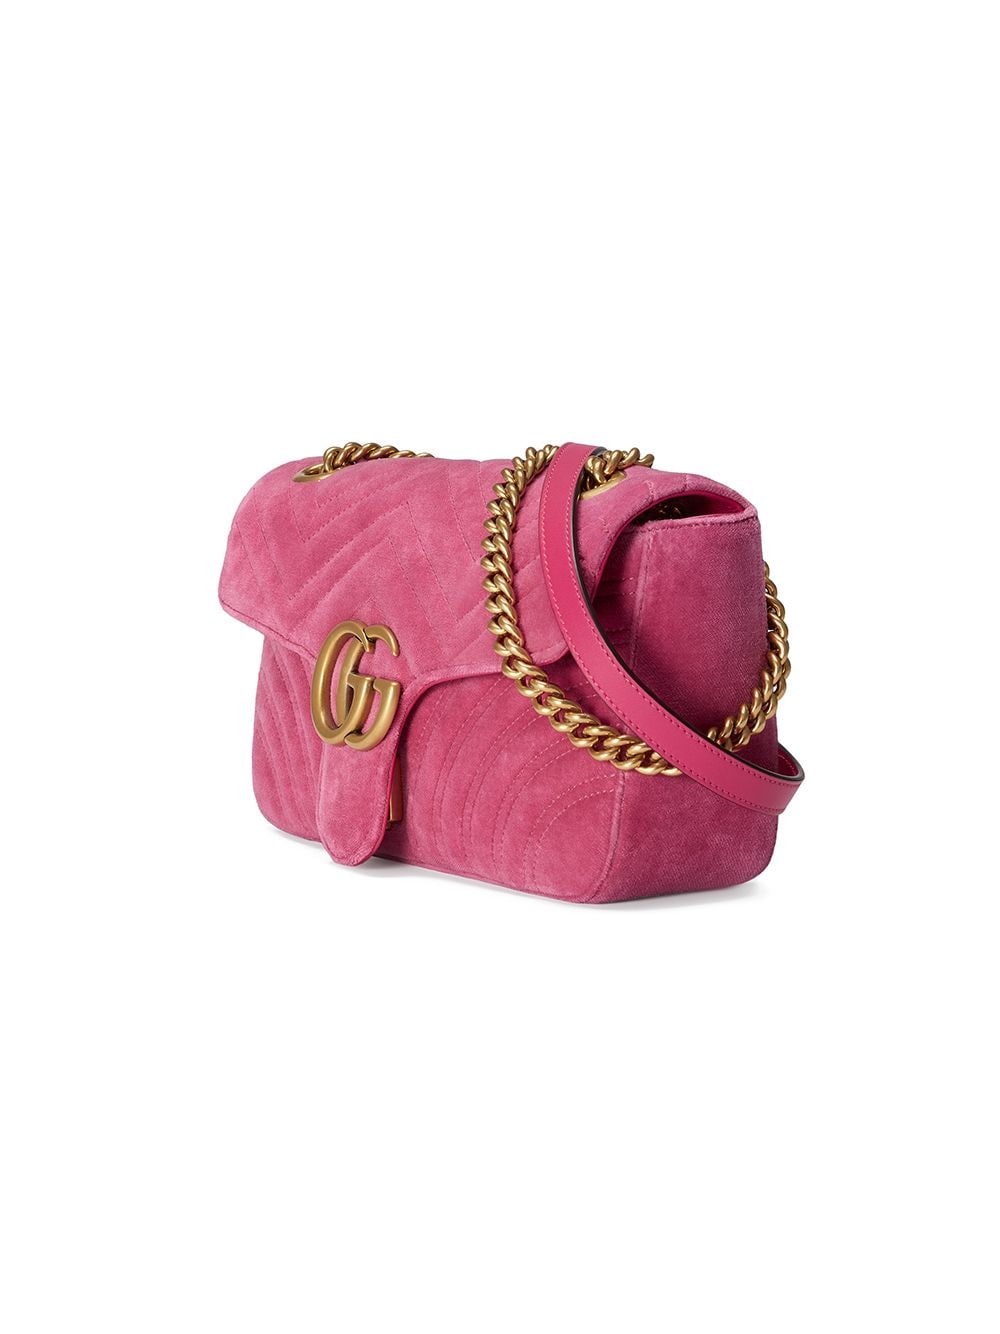 Gg marmont chain matelasse velvet handbag Gucci Pink in Velvet